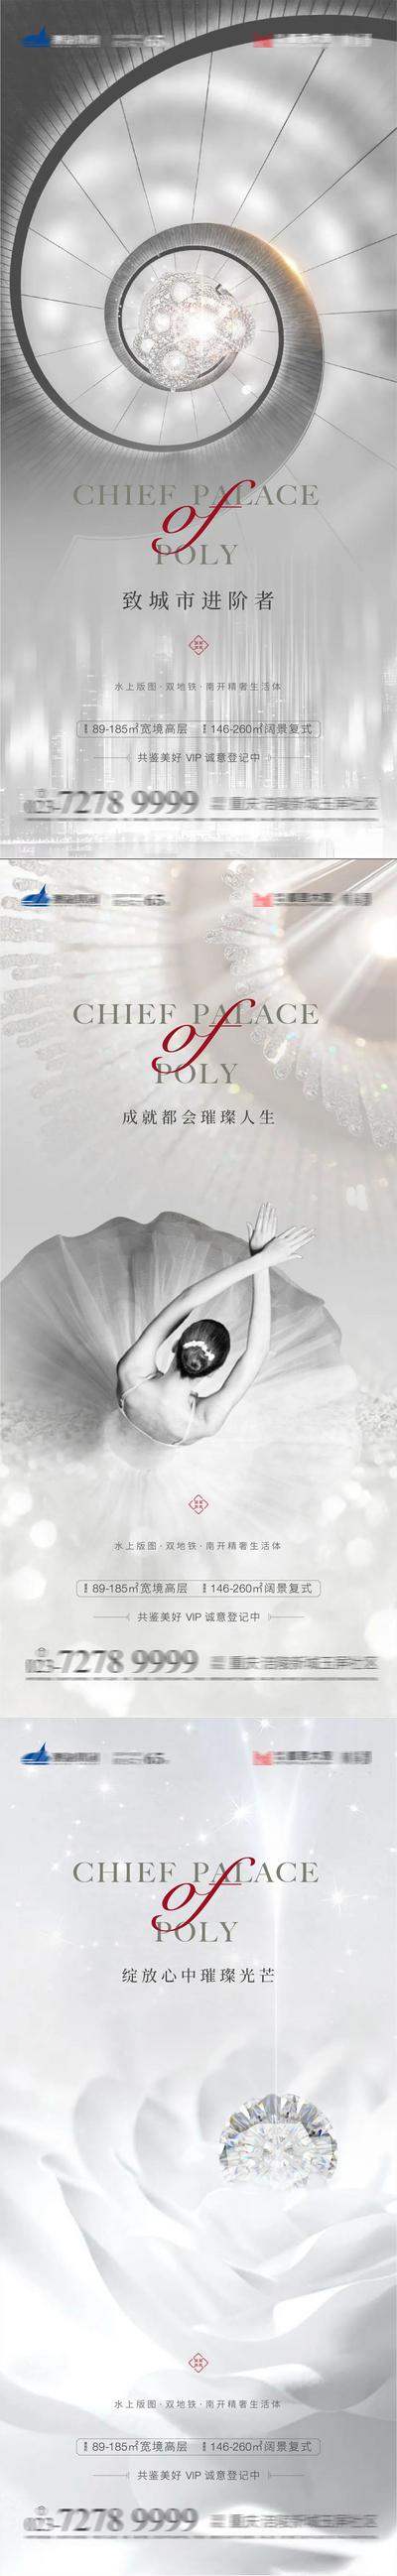 南门网 海报 房地产 入市 高级灰 芭蕾 钻石 系列